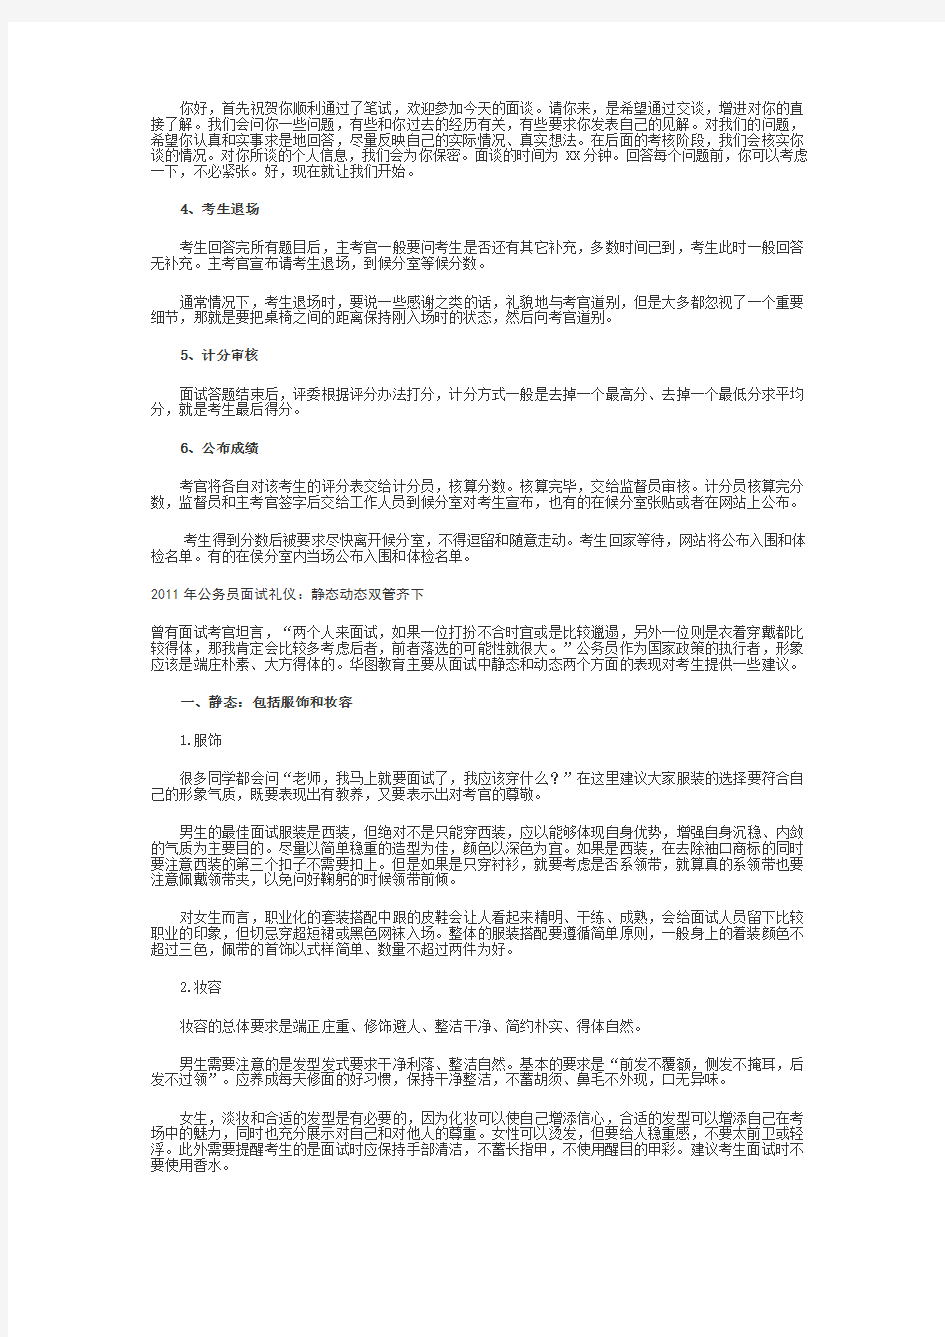 2010年10月30日贵州省公务员考试面试真题